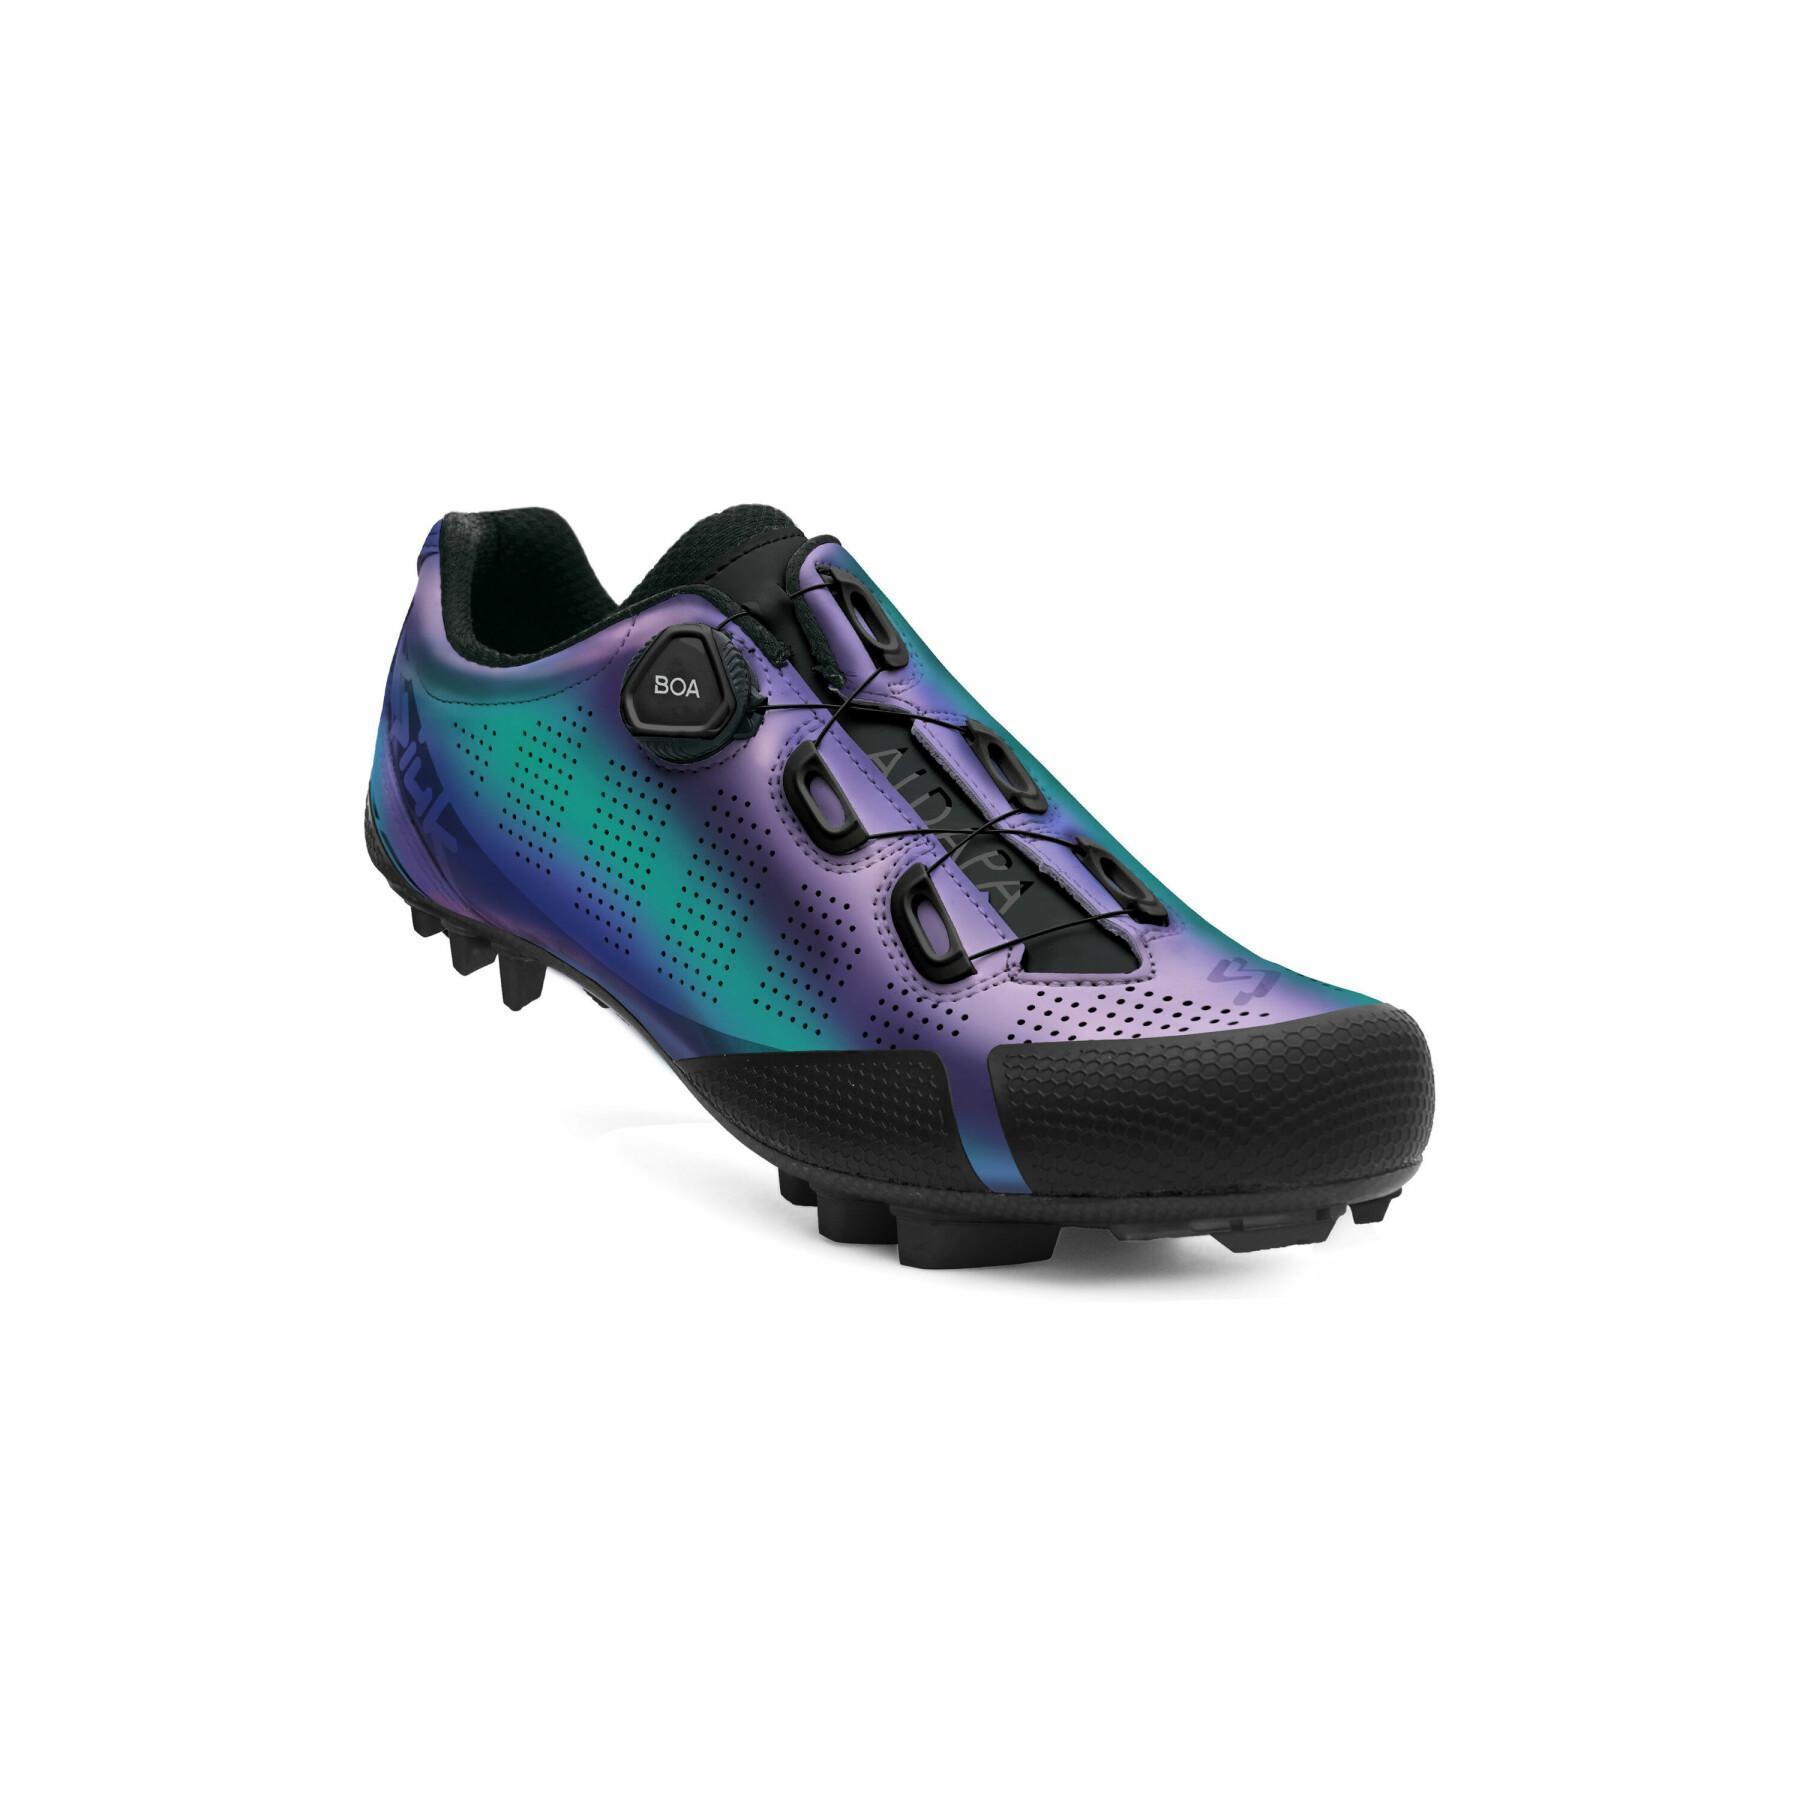 Spiuk Aldapa C MTB Shoes, Purple